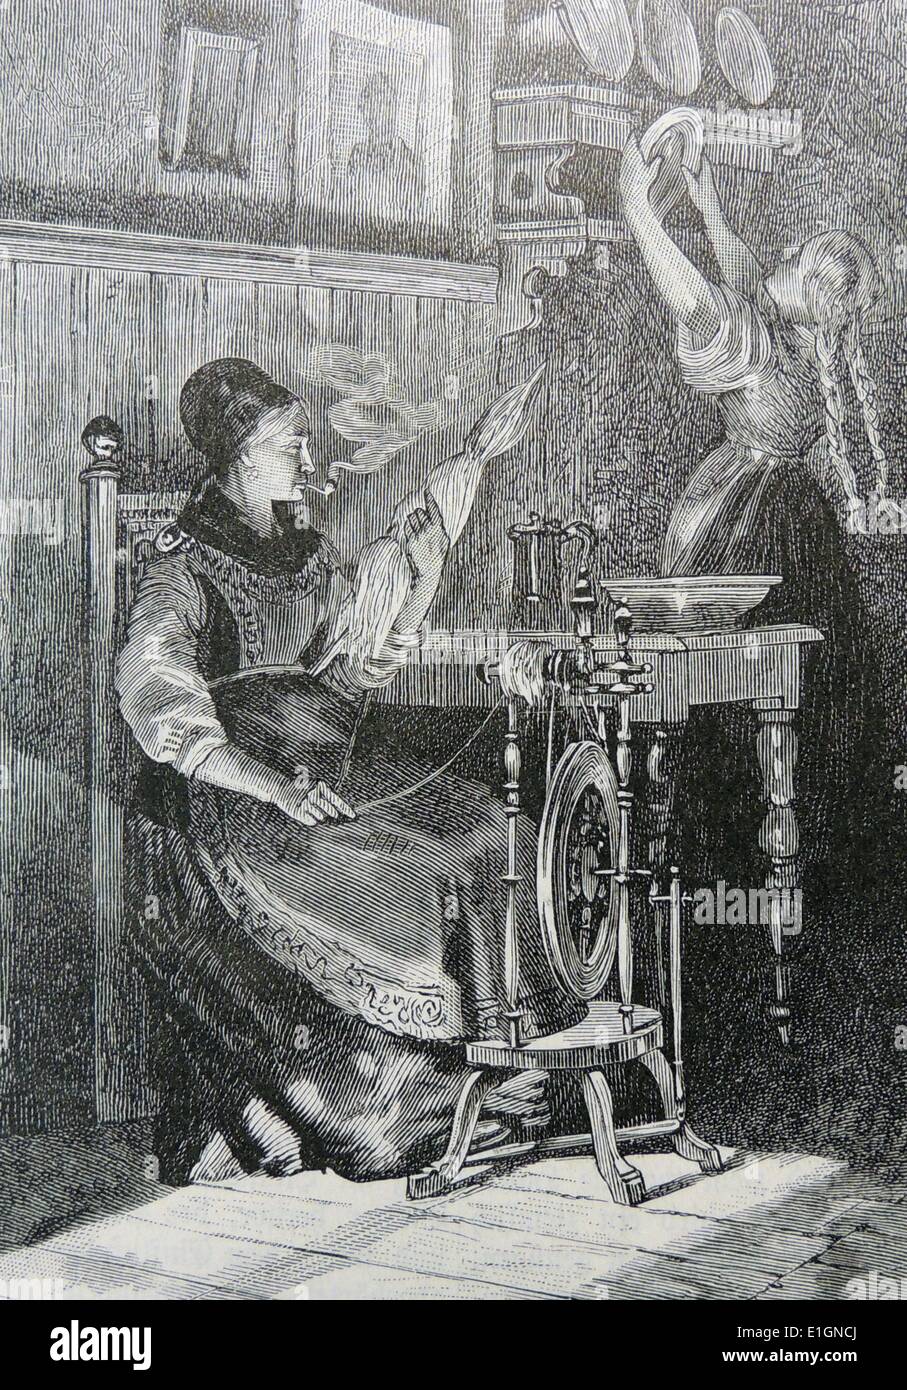 Frau von Telemark, Norwegen, Pfeife zu rauchen, da sie dreht. Gravur, Deutschland c1895. Stockfoto